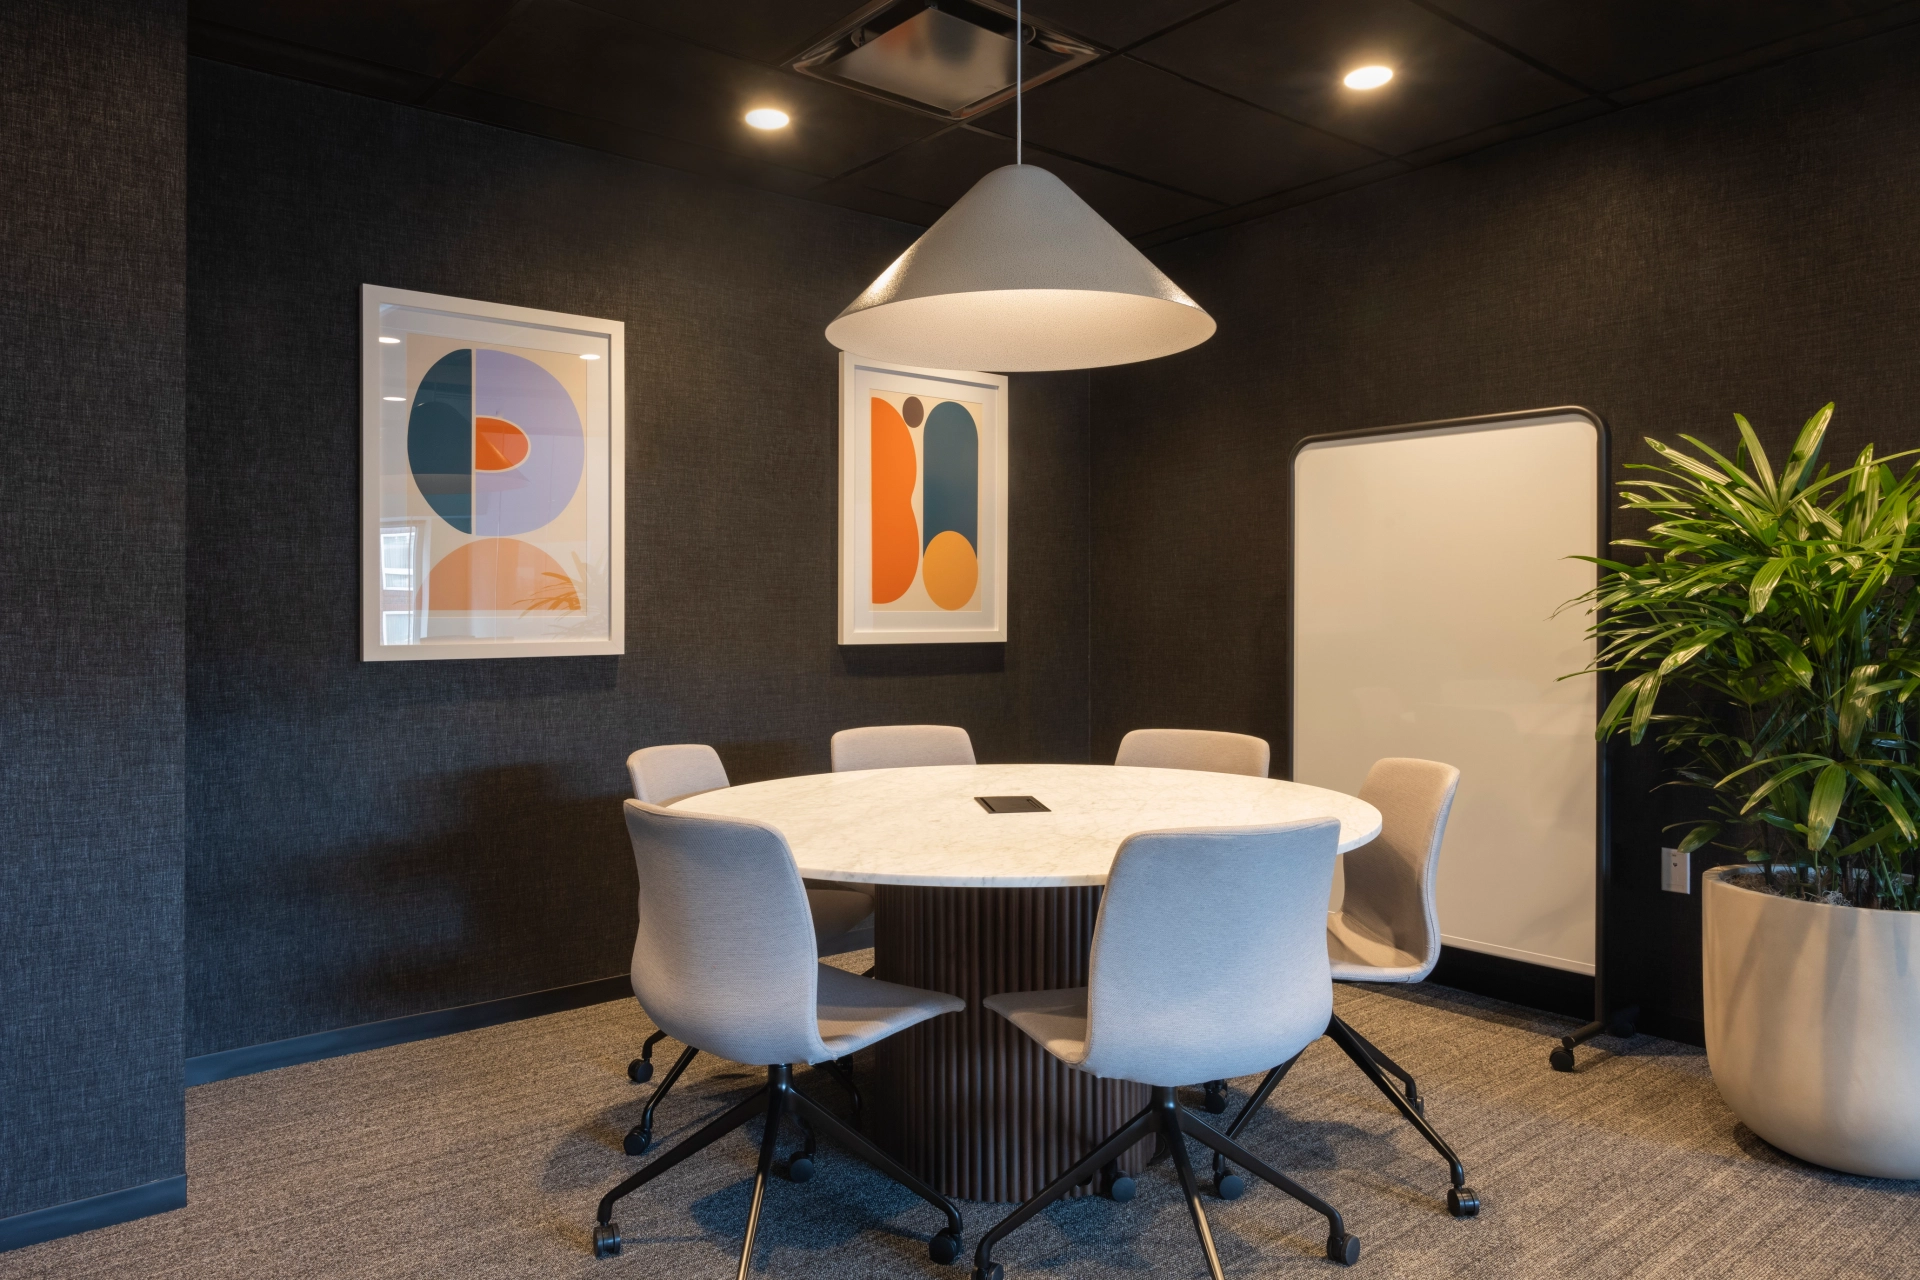 Een coworkingruimte uitgerust met een ronde tafel en stoelen, ideaal voor vergaderingen en samenwerkingen.